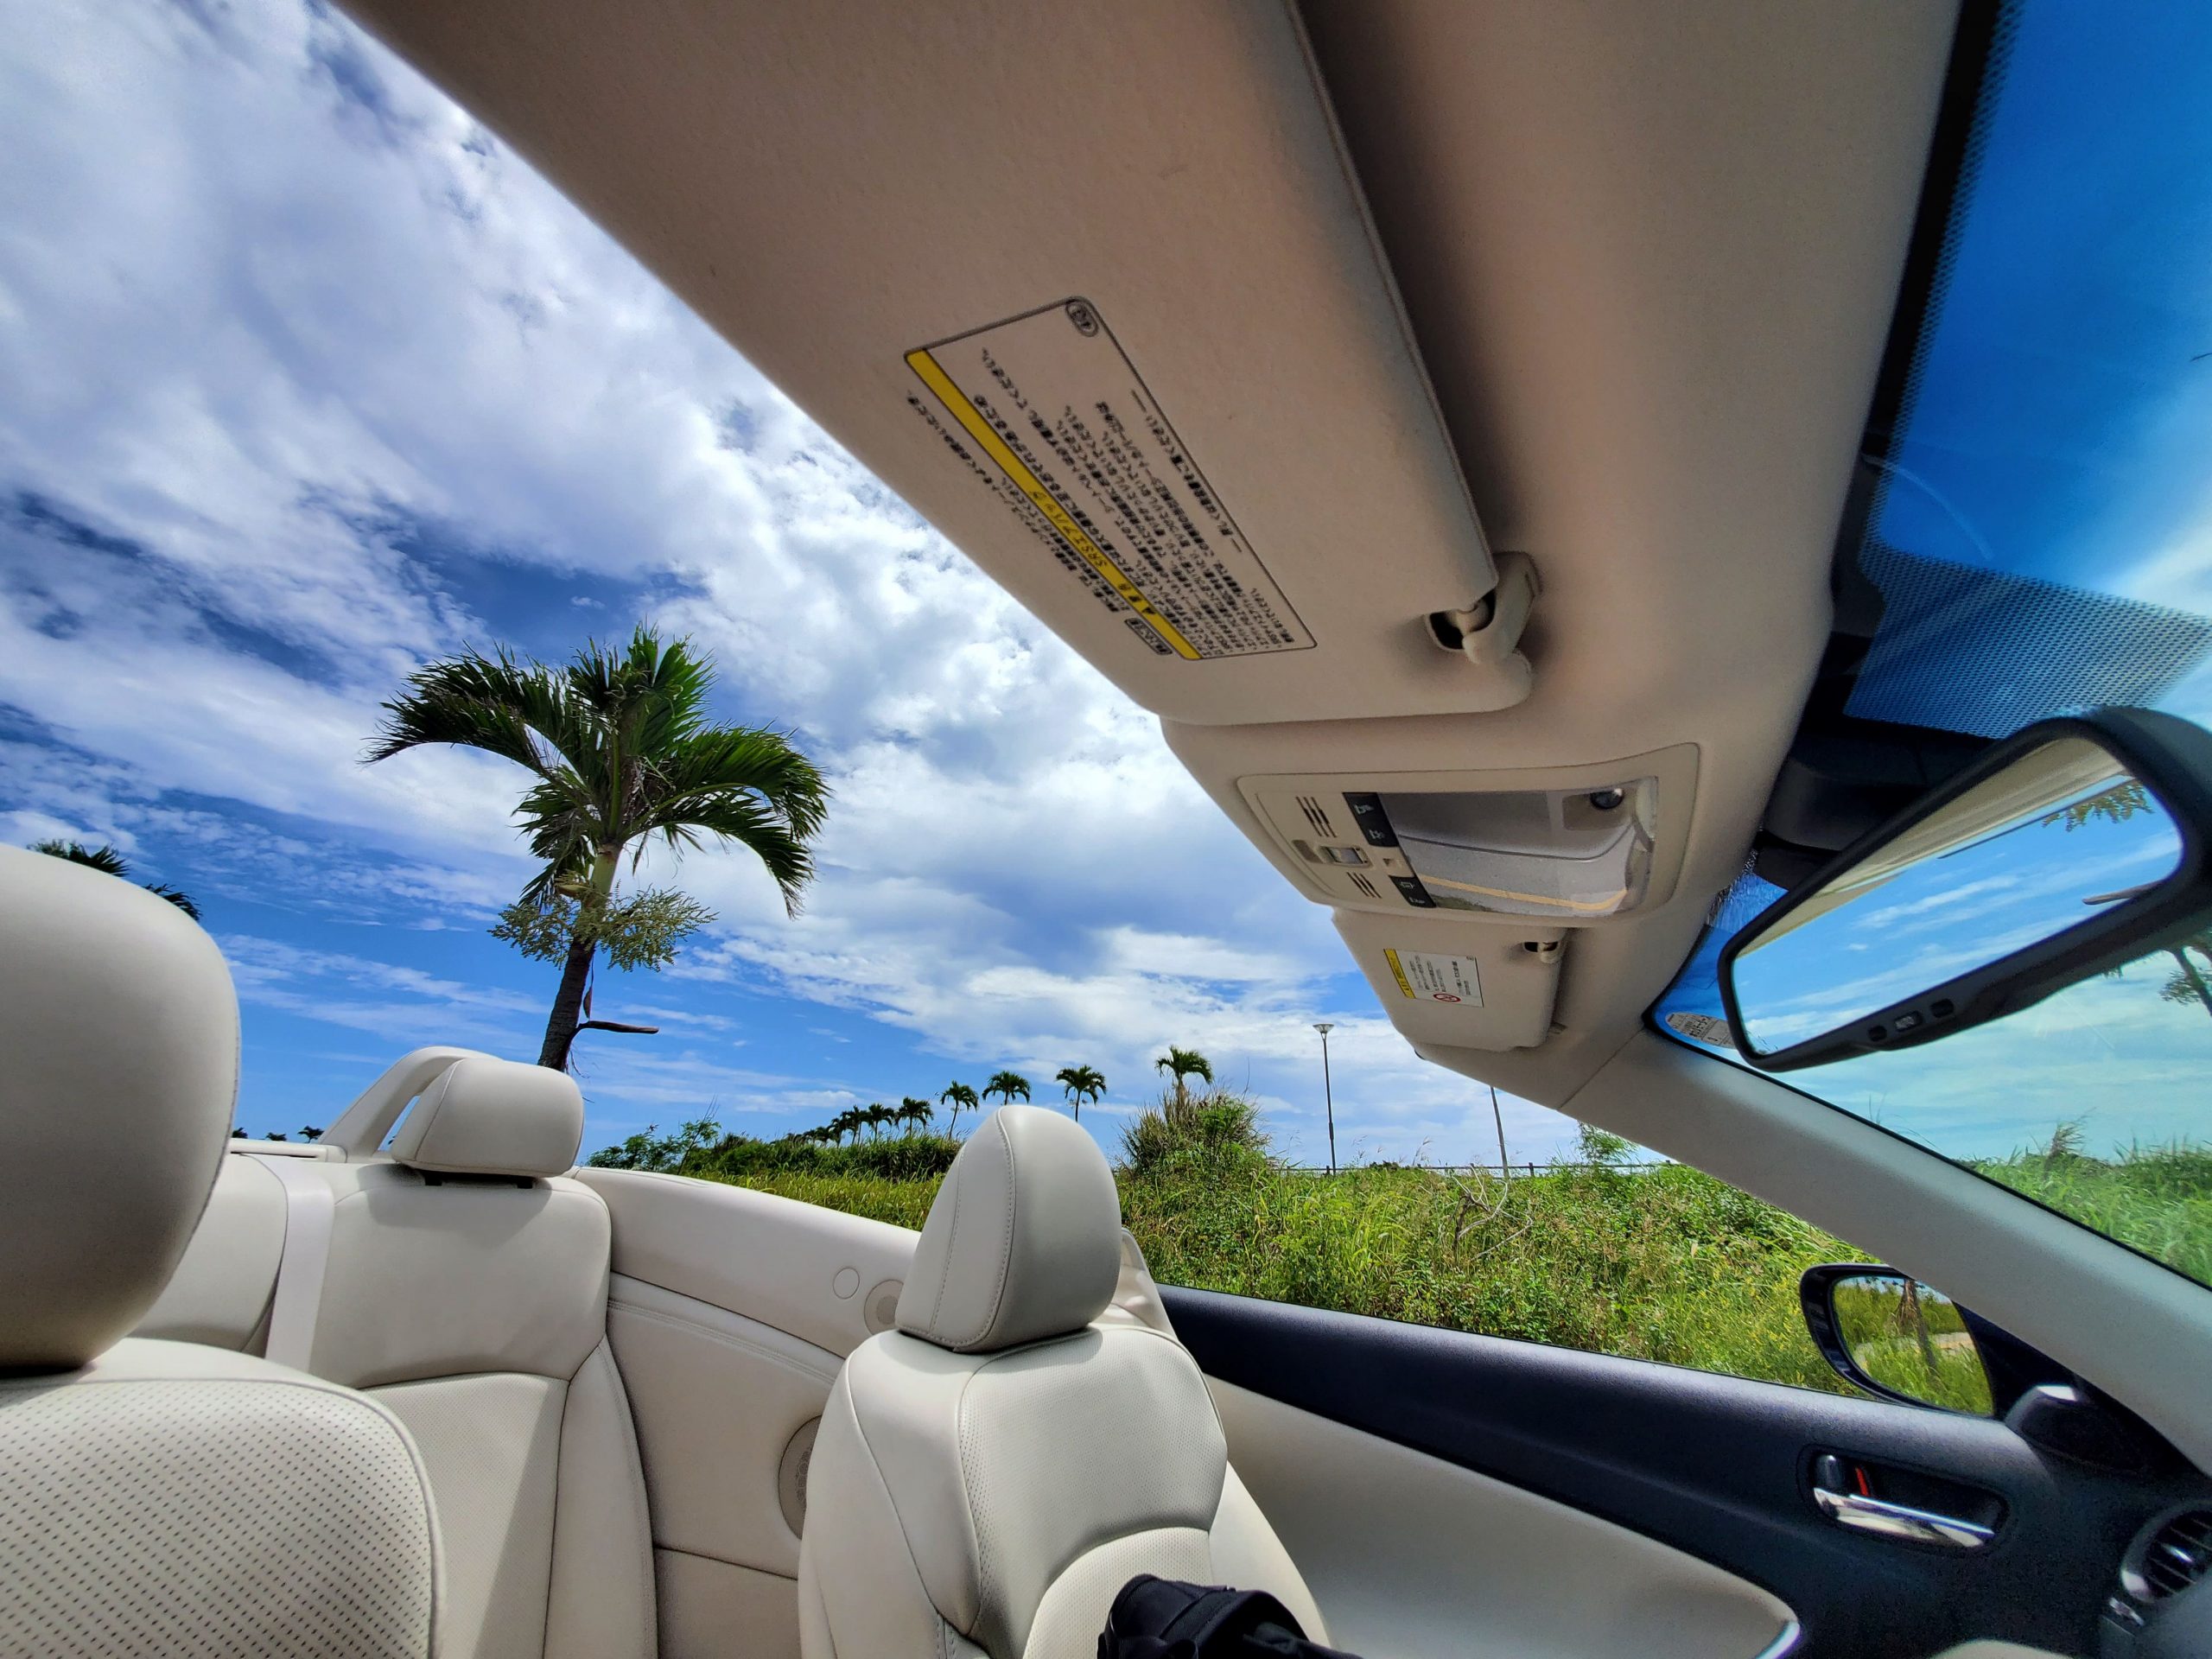 Lexusならではの安定感のある走りと高級感のある室内空間！<br />
素敵なオープンカーで沖縄ドライブを楽しもう！